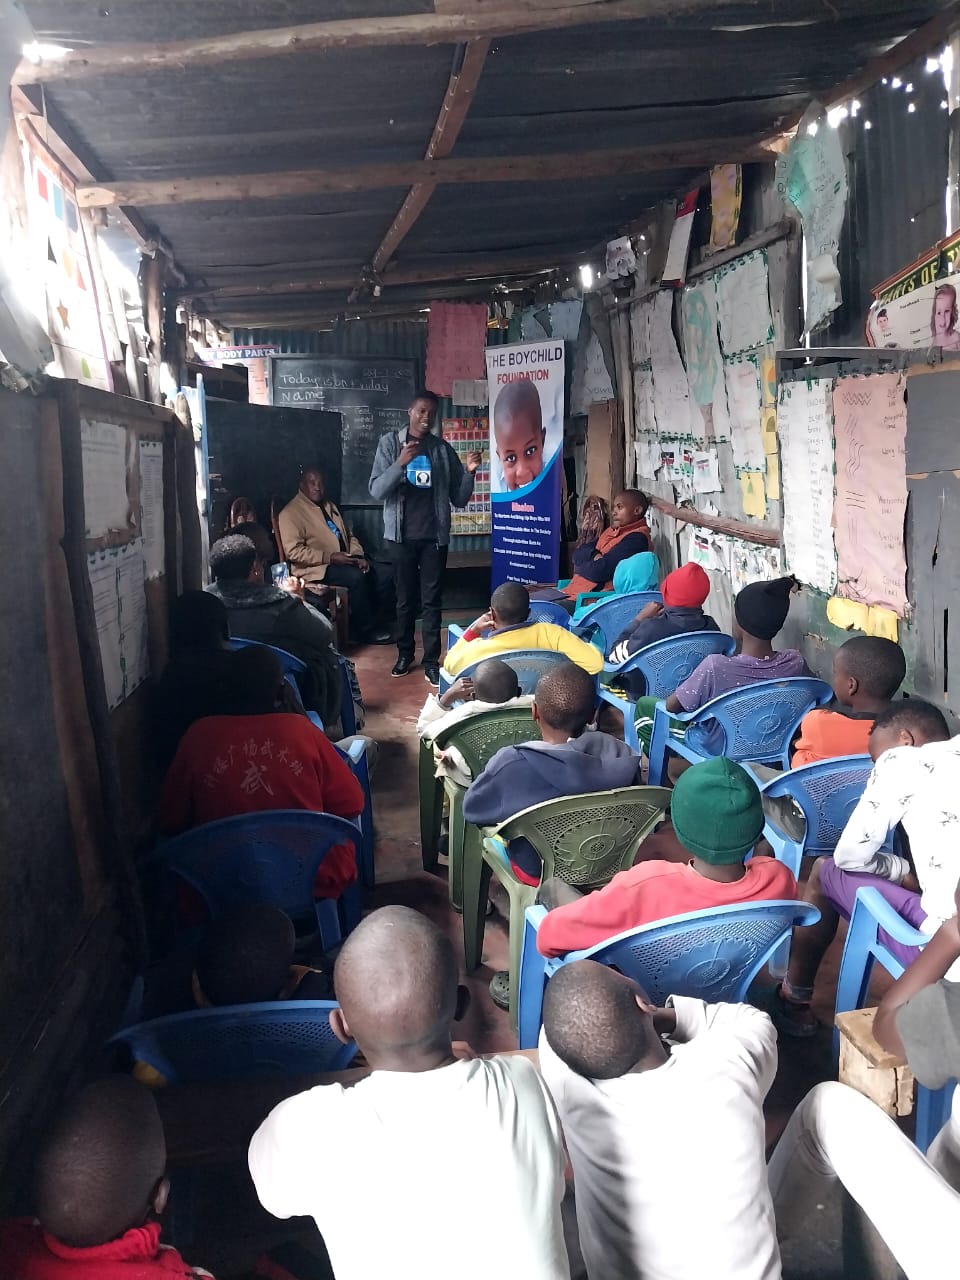 The boychild foundatation kicheko community mentoring